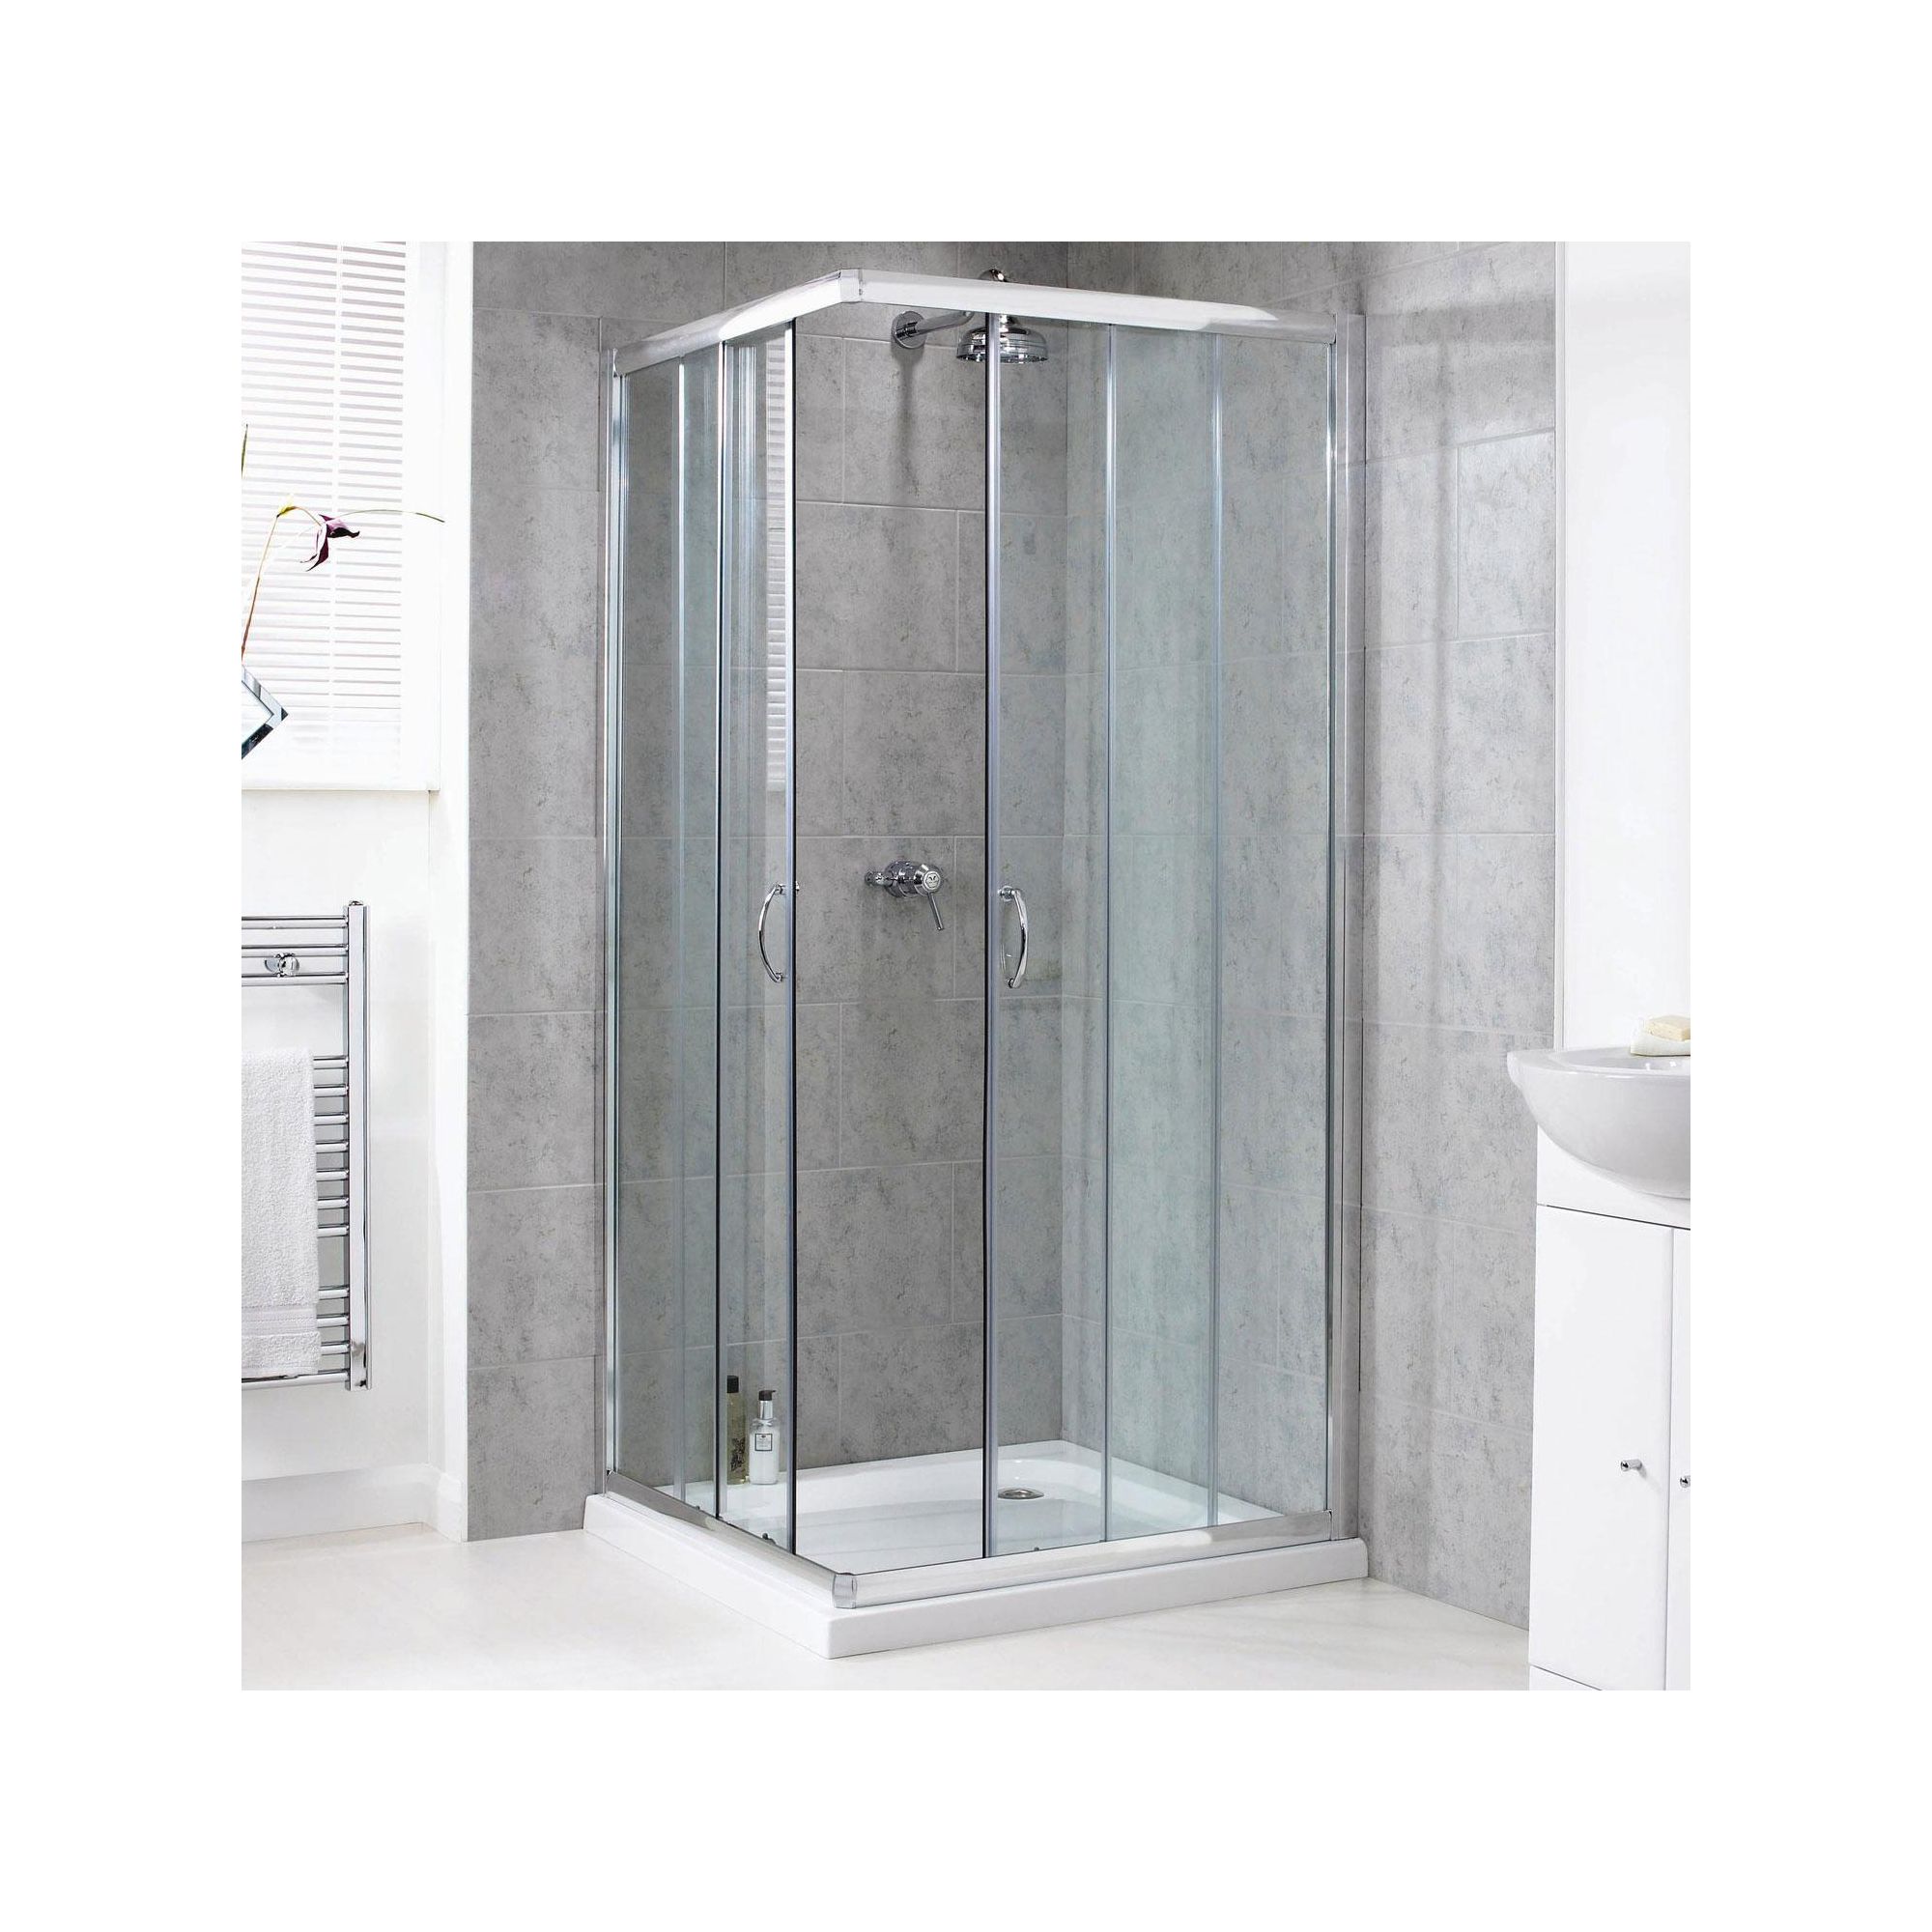 Aqualux Shine Corner Entry Shower Door, 800mm x 800mm, Polished Silver Frame, 6mm Glass at Tesco Direct